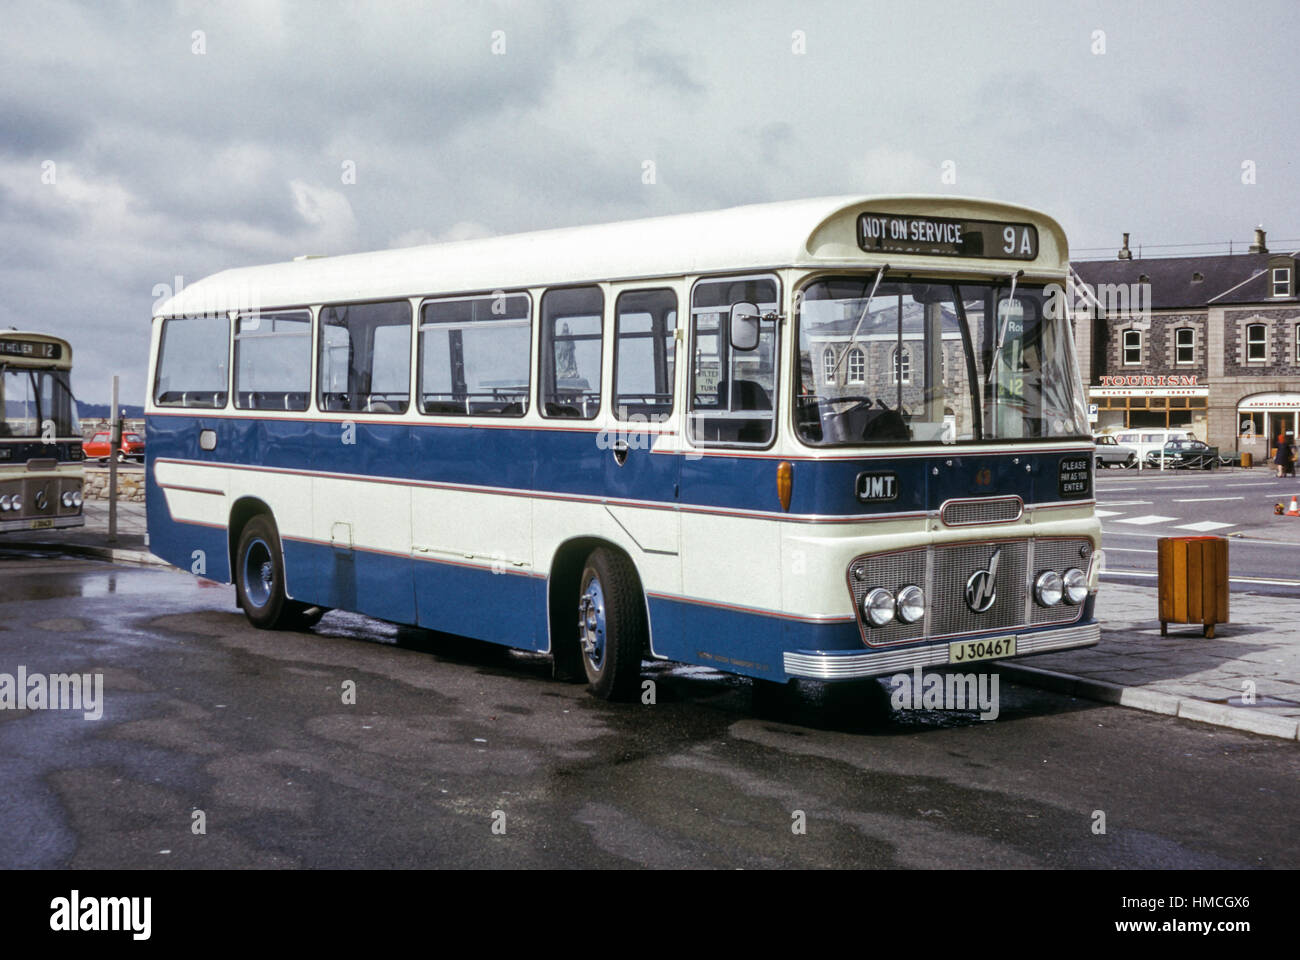 Jersey, Islas del Canal - 1973: Vintage imagen de autobús en St Helier, Jersey. Jersey transporte automotor Ford R192 43 (registro J30467). Foto de stock